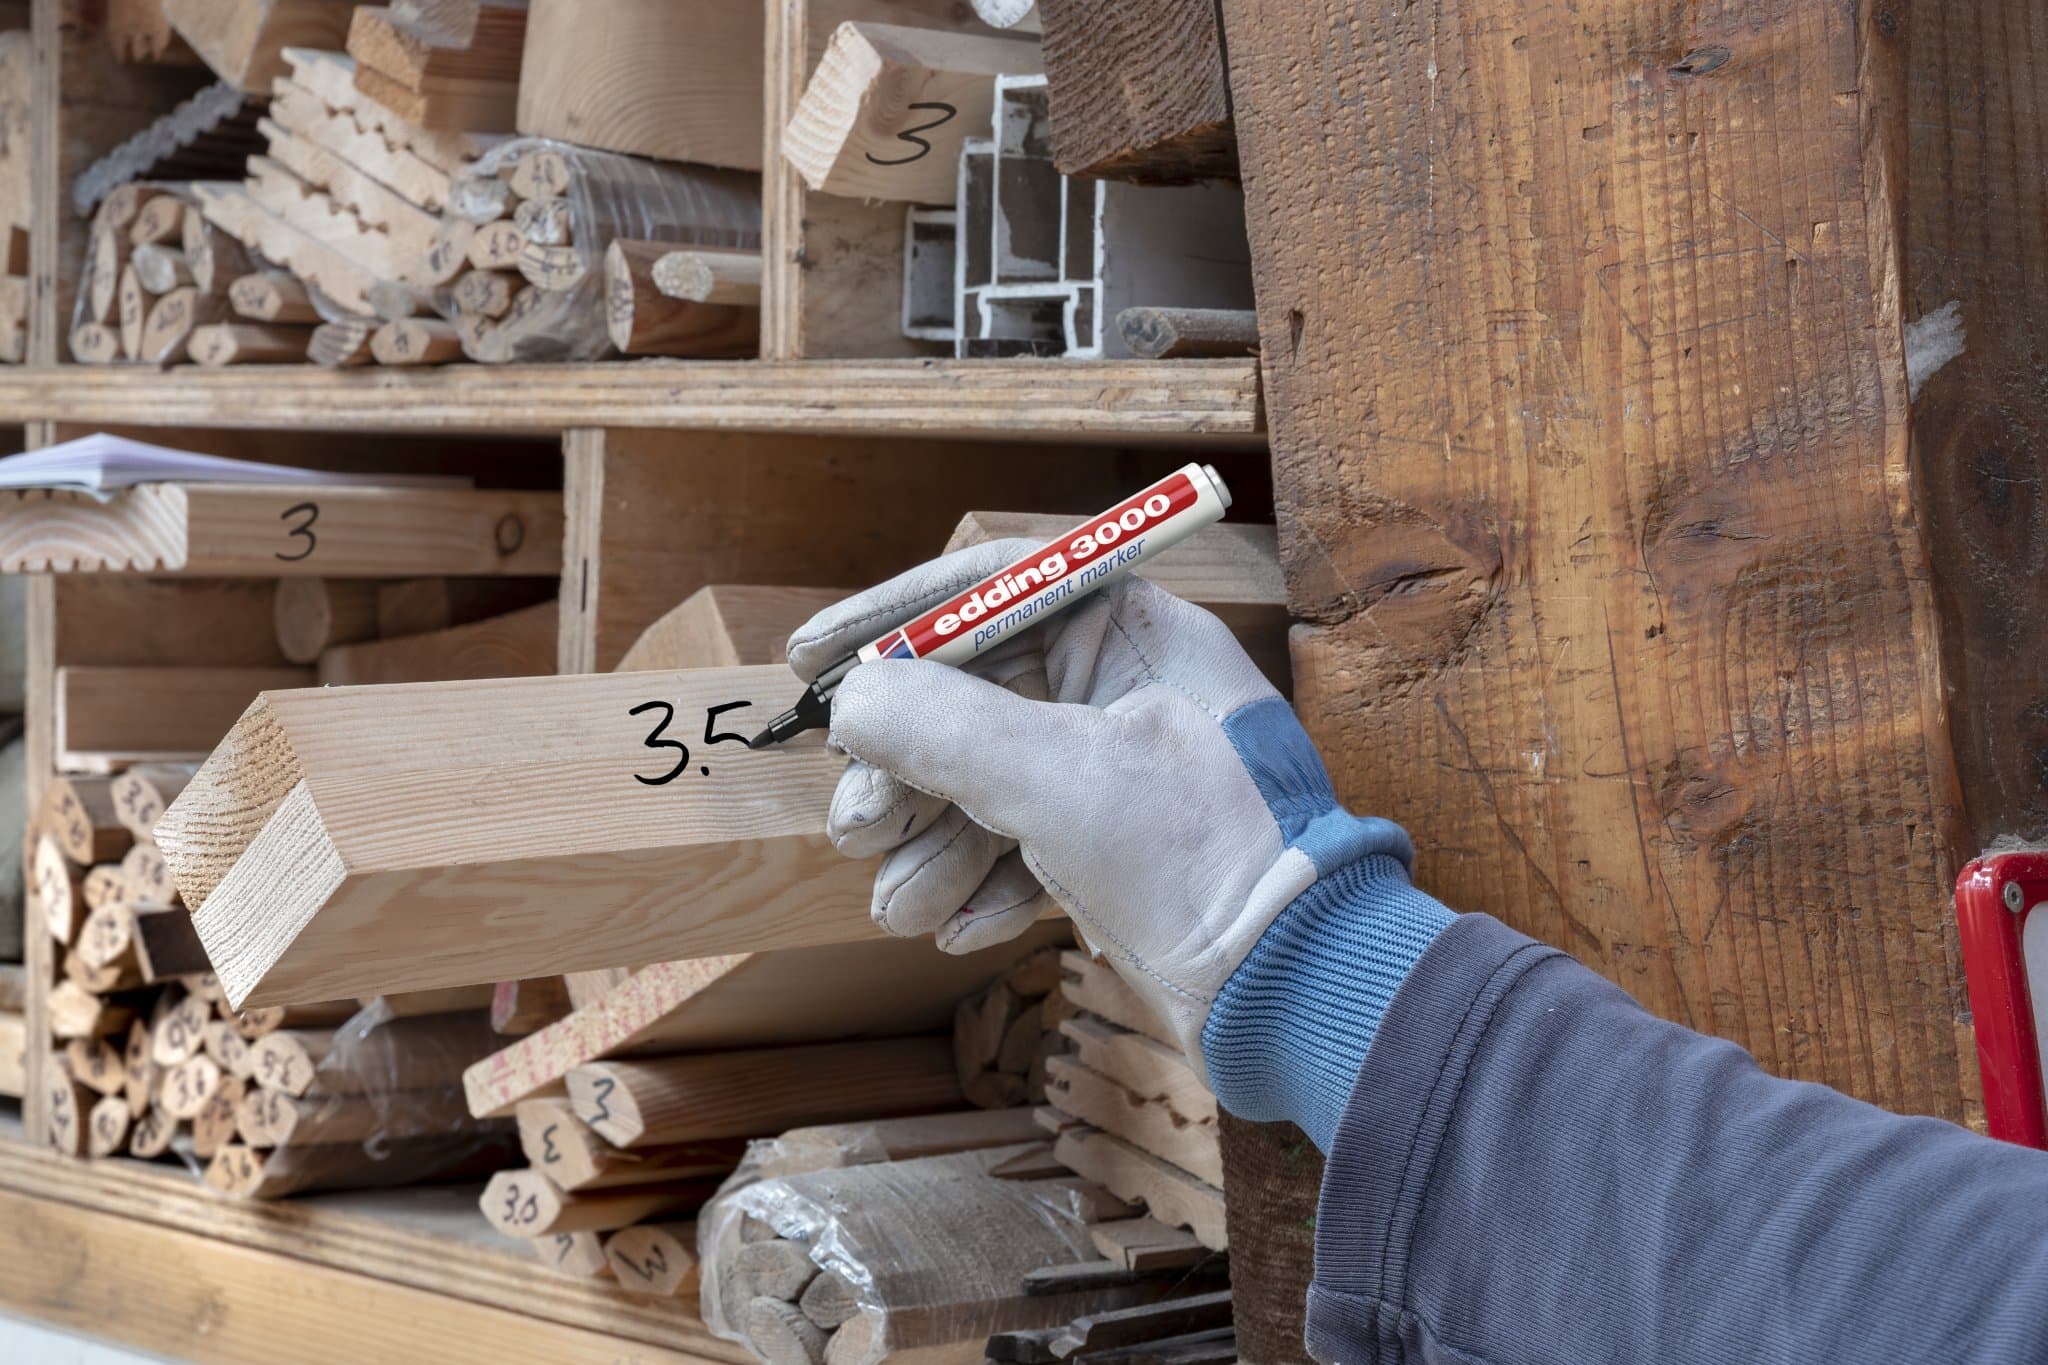 Ein Handwerker mit Handschuhen markiert ein Holzbrett mit einer Nummer mit einem edding 3000 Permanentmarker 10er Set in einer gut organisierten Werkstatt voller Holzmaterialien und -komponenten auf Regalen.